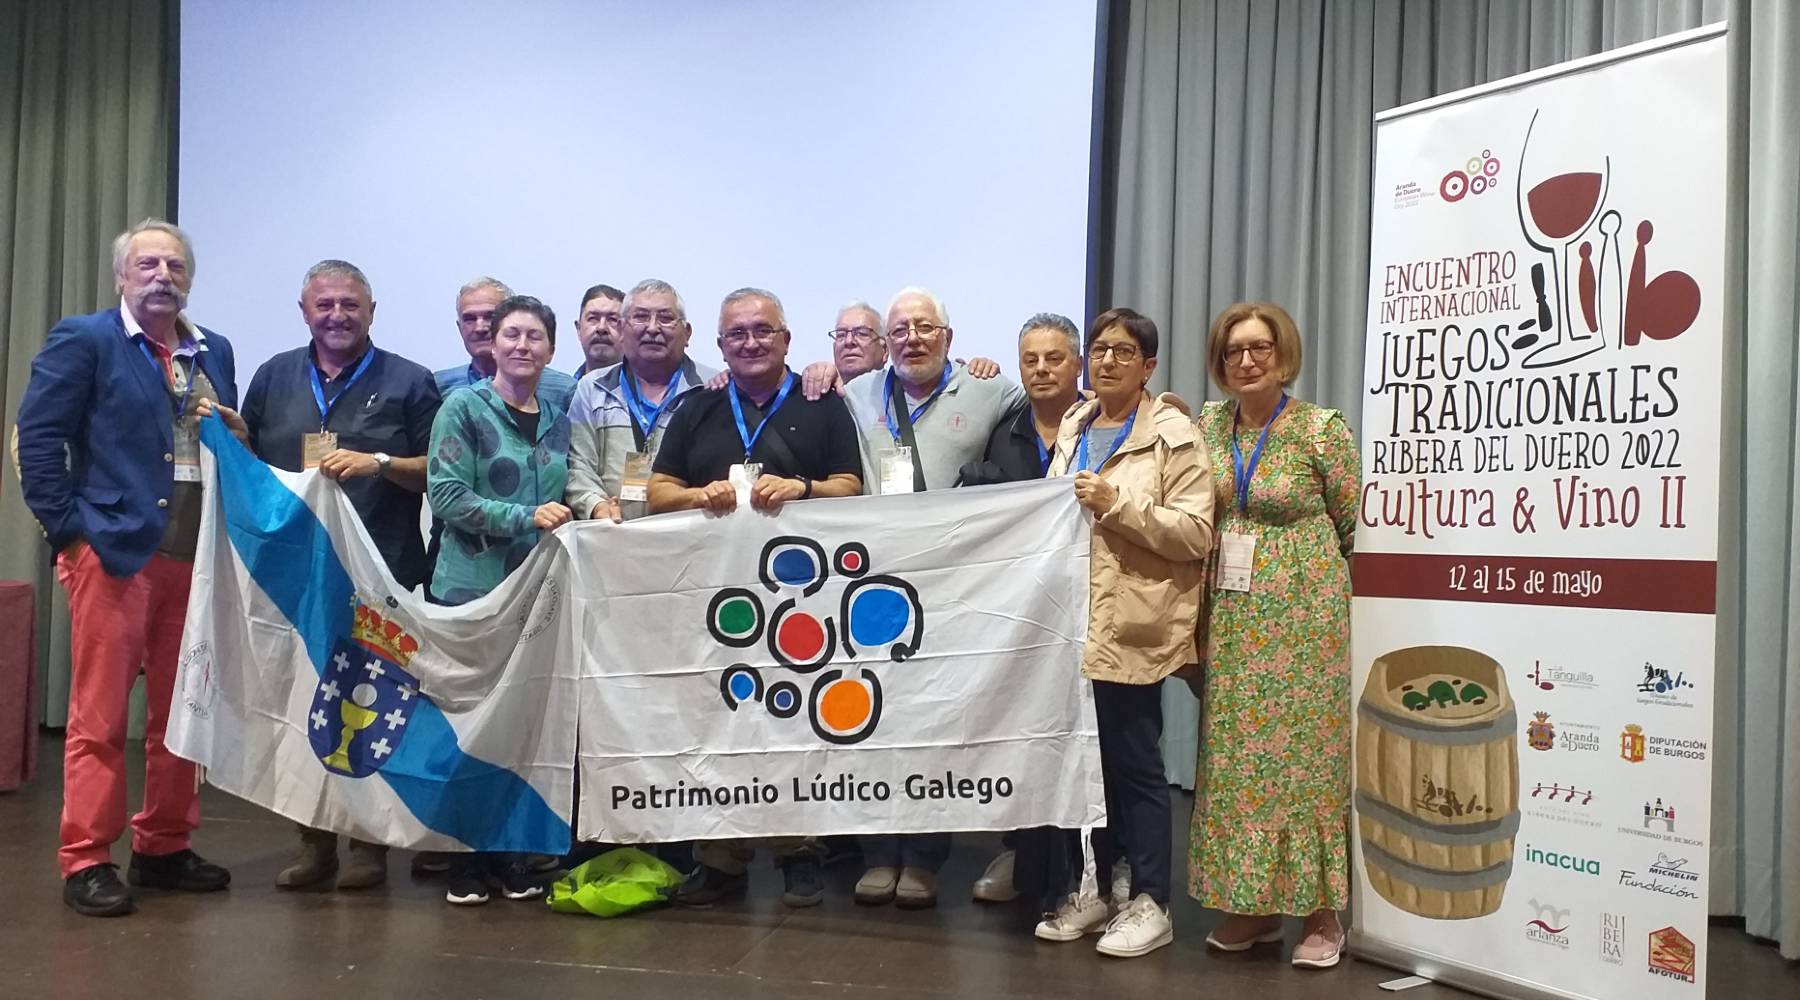 Ricardo Pérez y Verdes (Museo MELGA) junto a varios asistentes al congreso internacional de deportes y juegos tradicionales